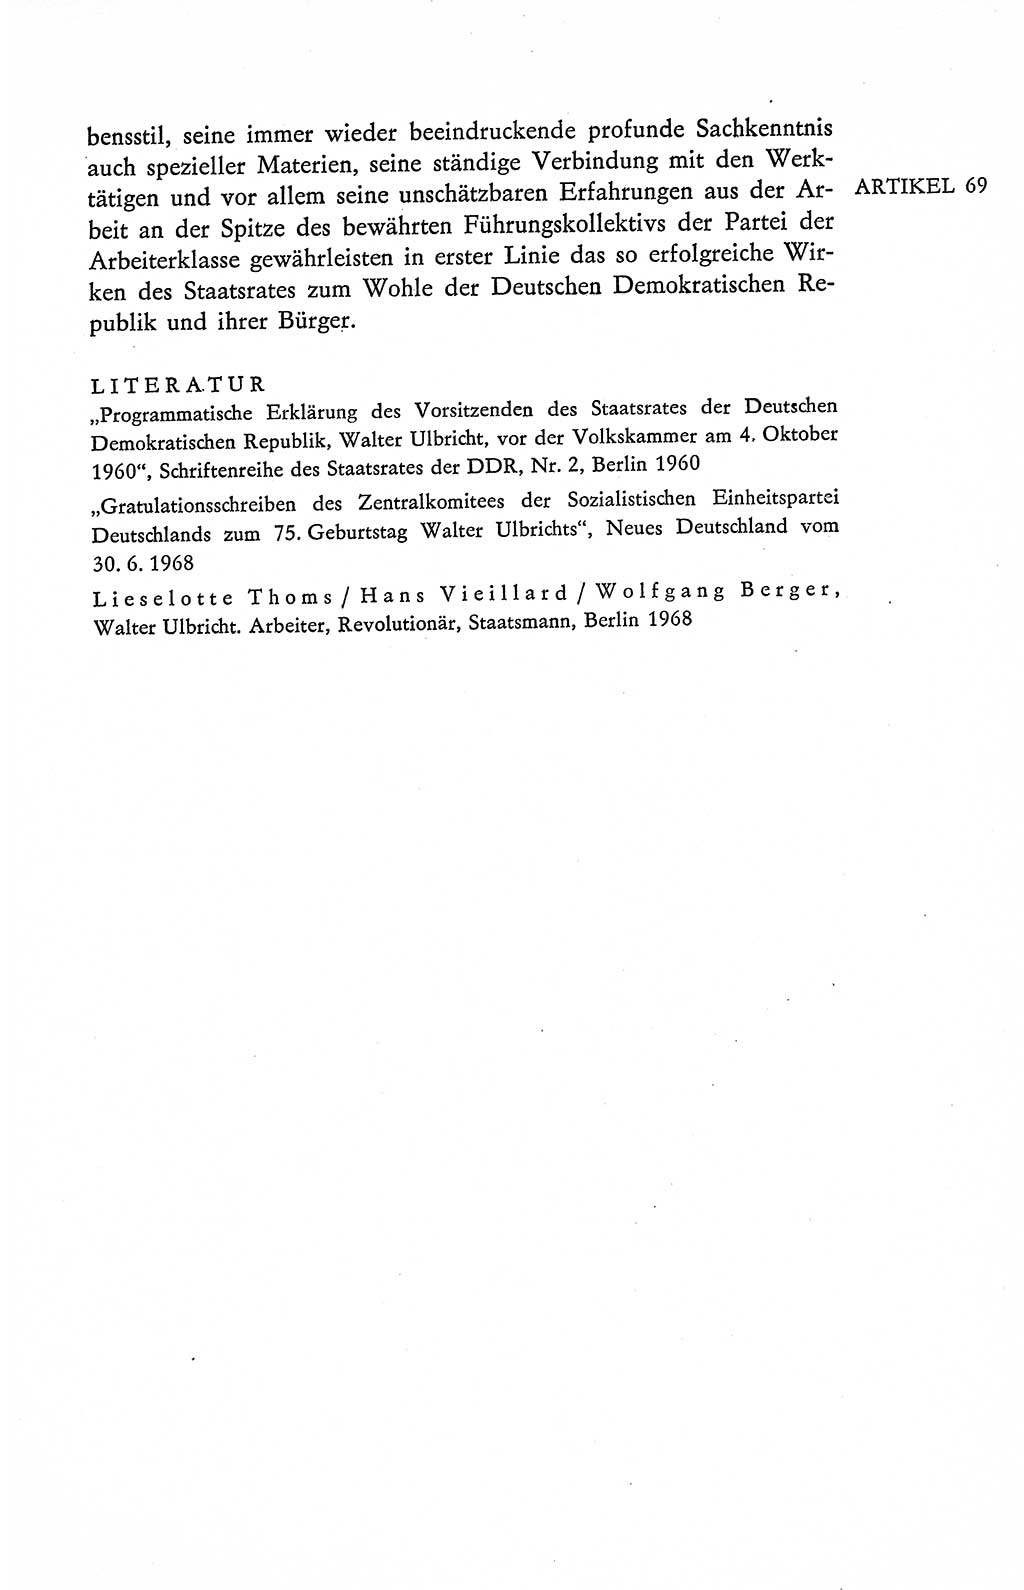 Verfassung der Deutschen Demokratischen Republik (DDR), Dokumente, Kommentar 1969, Band 2, Seite 317 (Verf. DDR Dok. Komm. 1969, Bd. 2, S. 317)